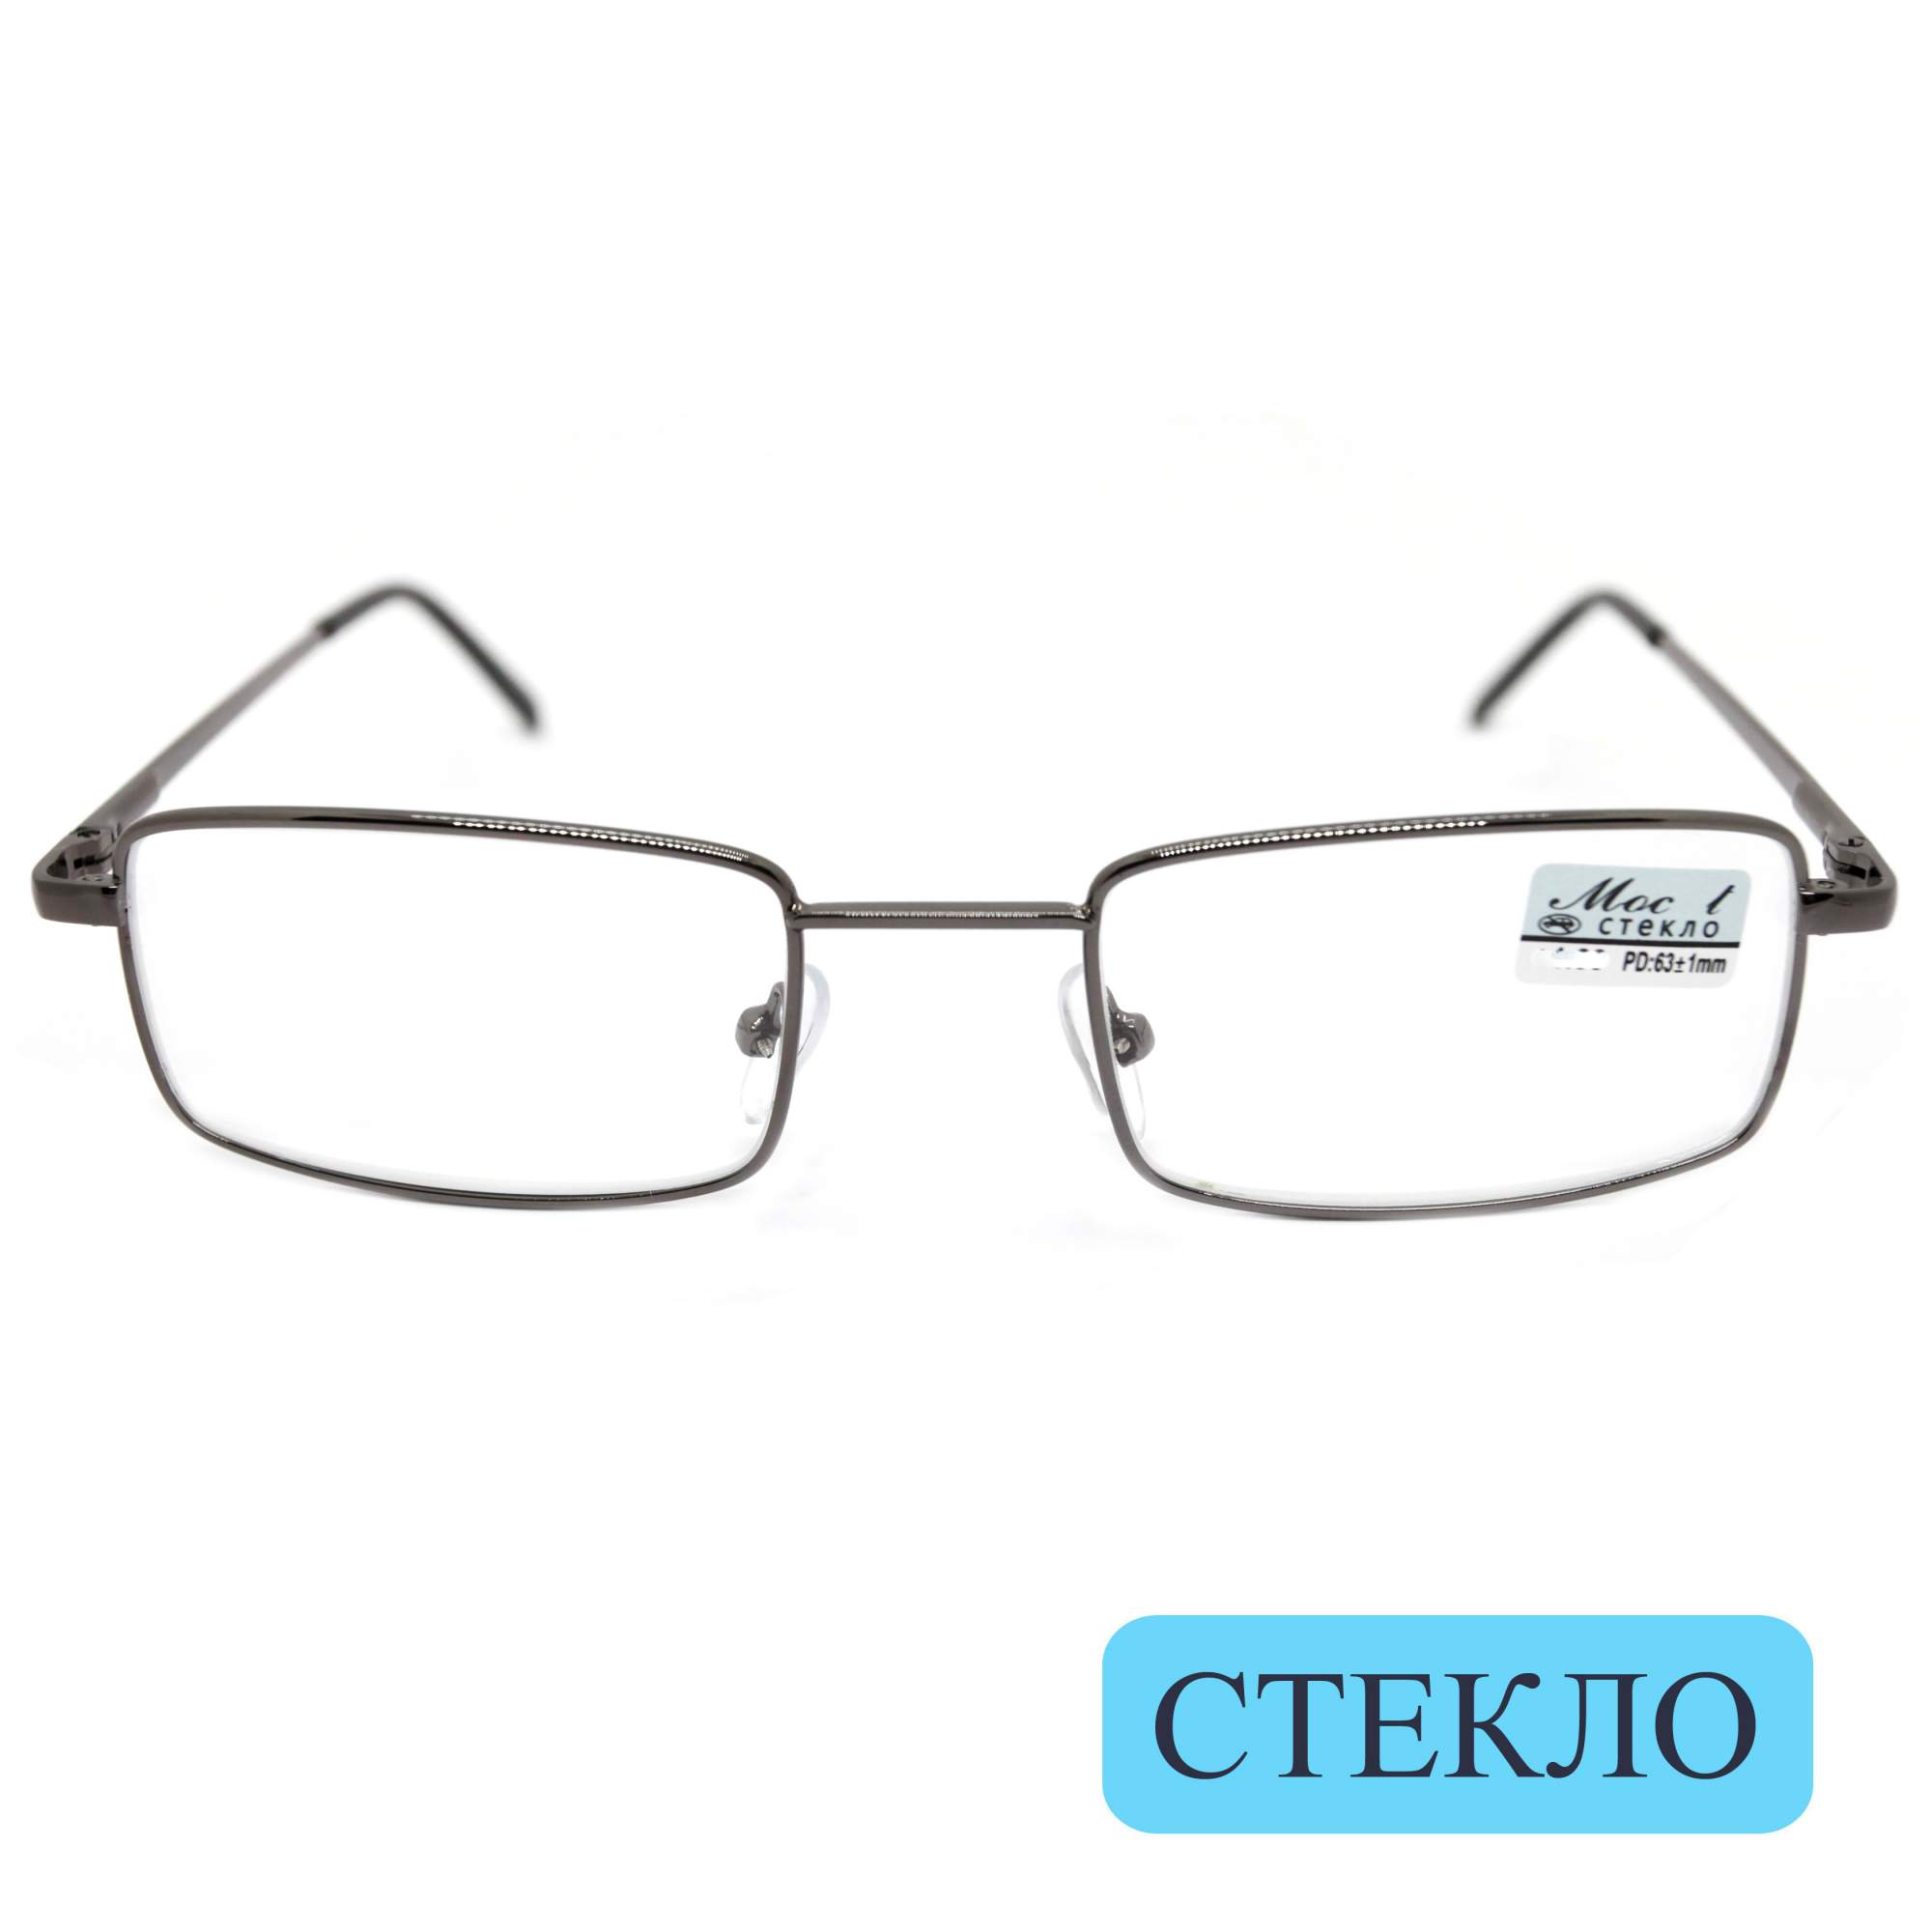 Очки для зрения MOCT 6603, со стеклянной линзой, -5,00, без футляра, серые, РЦ 62-64 - купить в интернет-магазинах, цены на Мегамаркет | корригирующие очки FED-6603-500-GRY-M